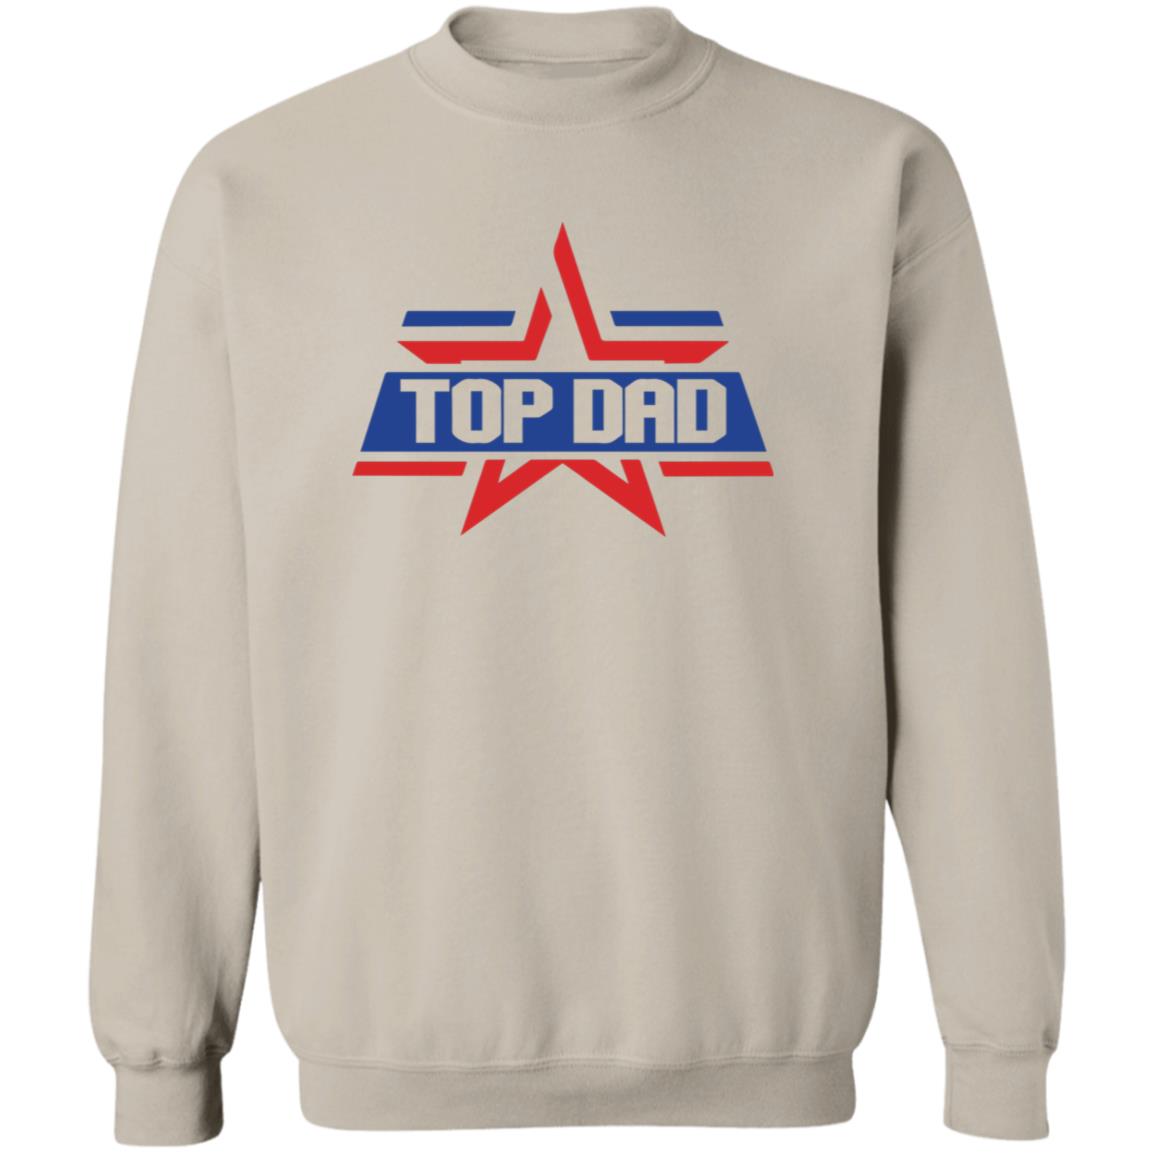 Top Dad Star Apparel